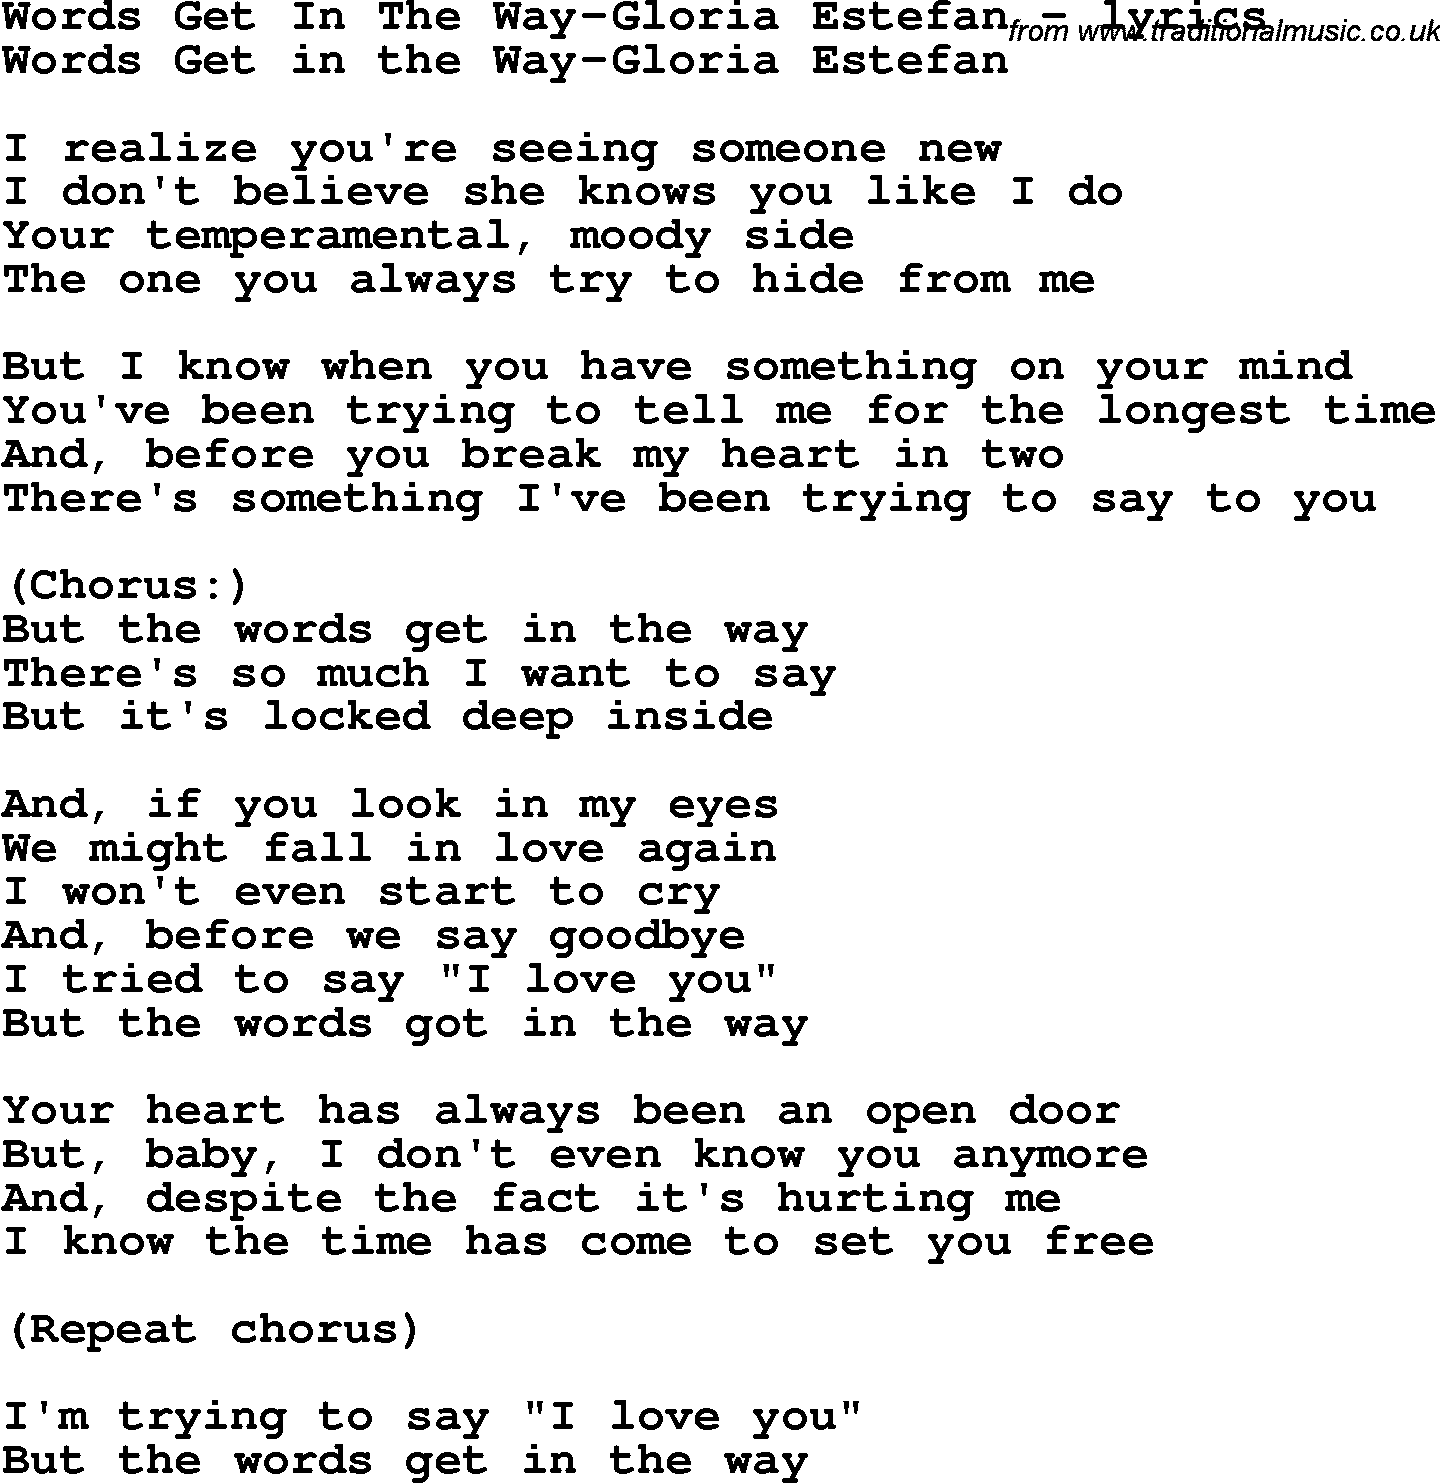 Love Song Lyrics for: Words Get In The Way-Gloria Estefan